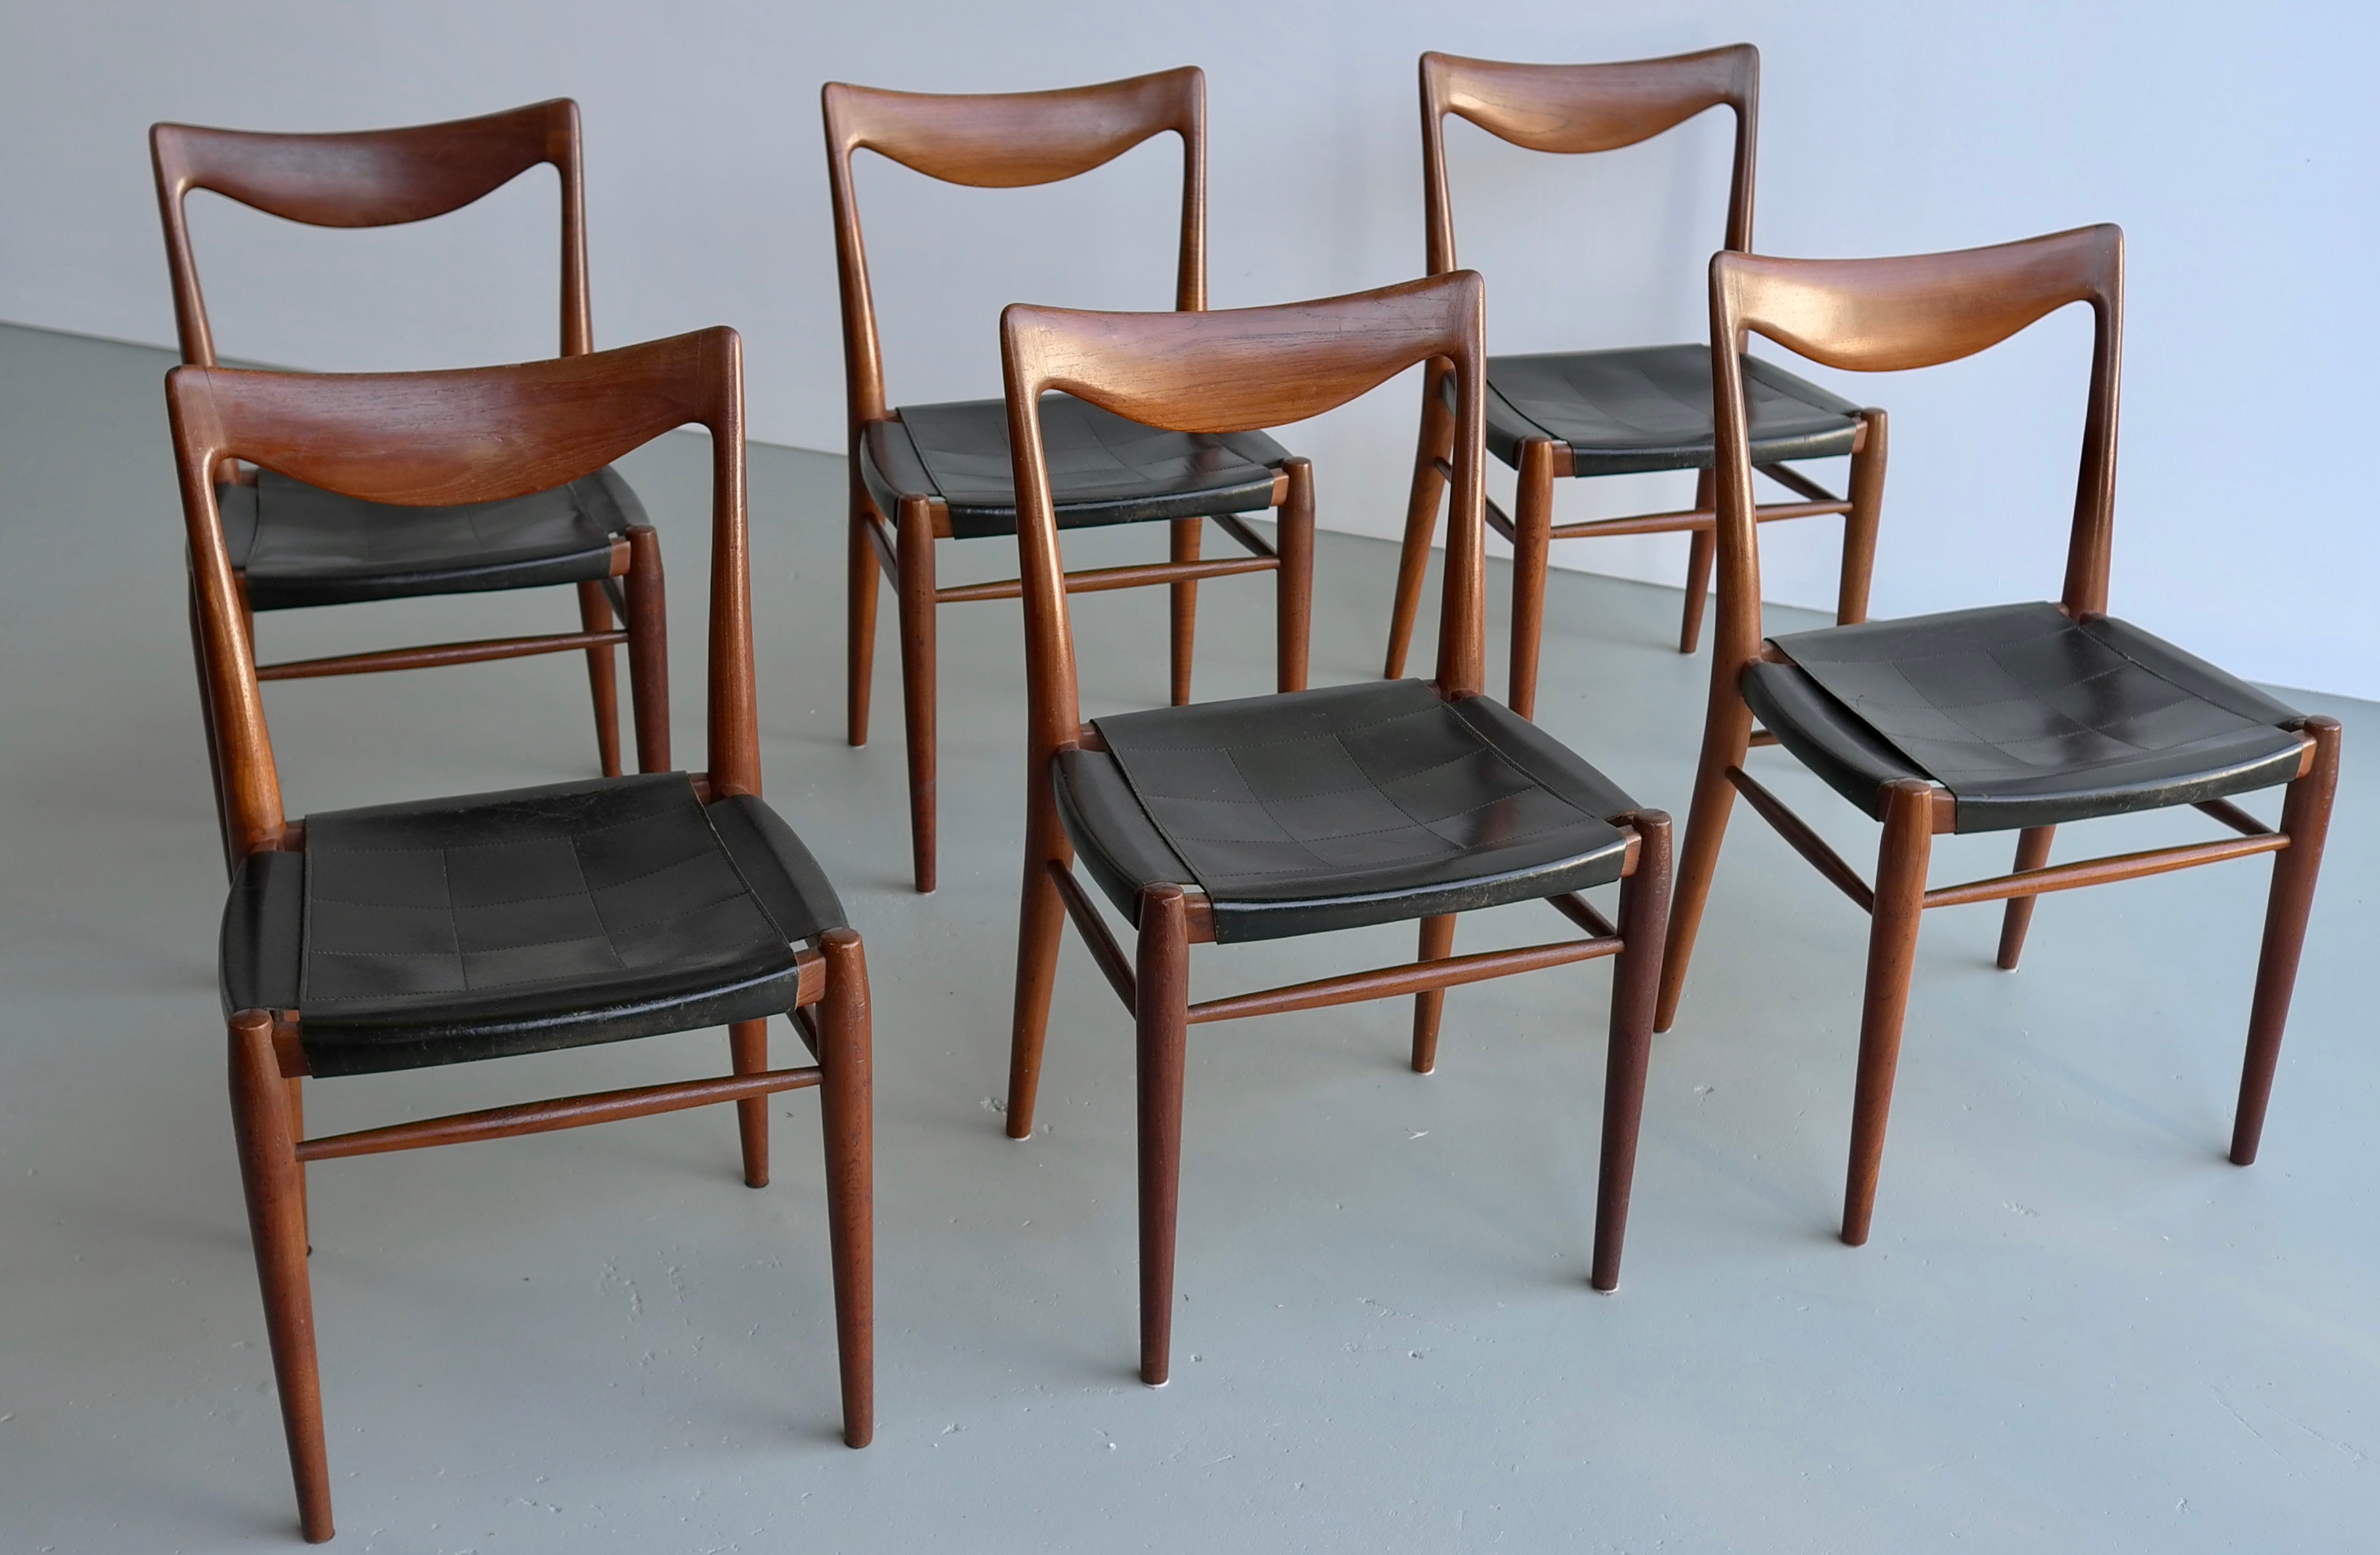 Rastad und Relling sechs Bambi-Stühle aus Teakholz und Leder, Gustav Bahus, 1960er Jahre.
Diese Stühle haben ihre originalen schwarzen Ledersitzflächen.